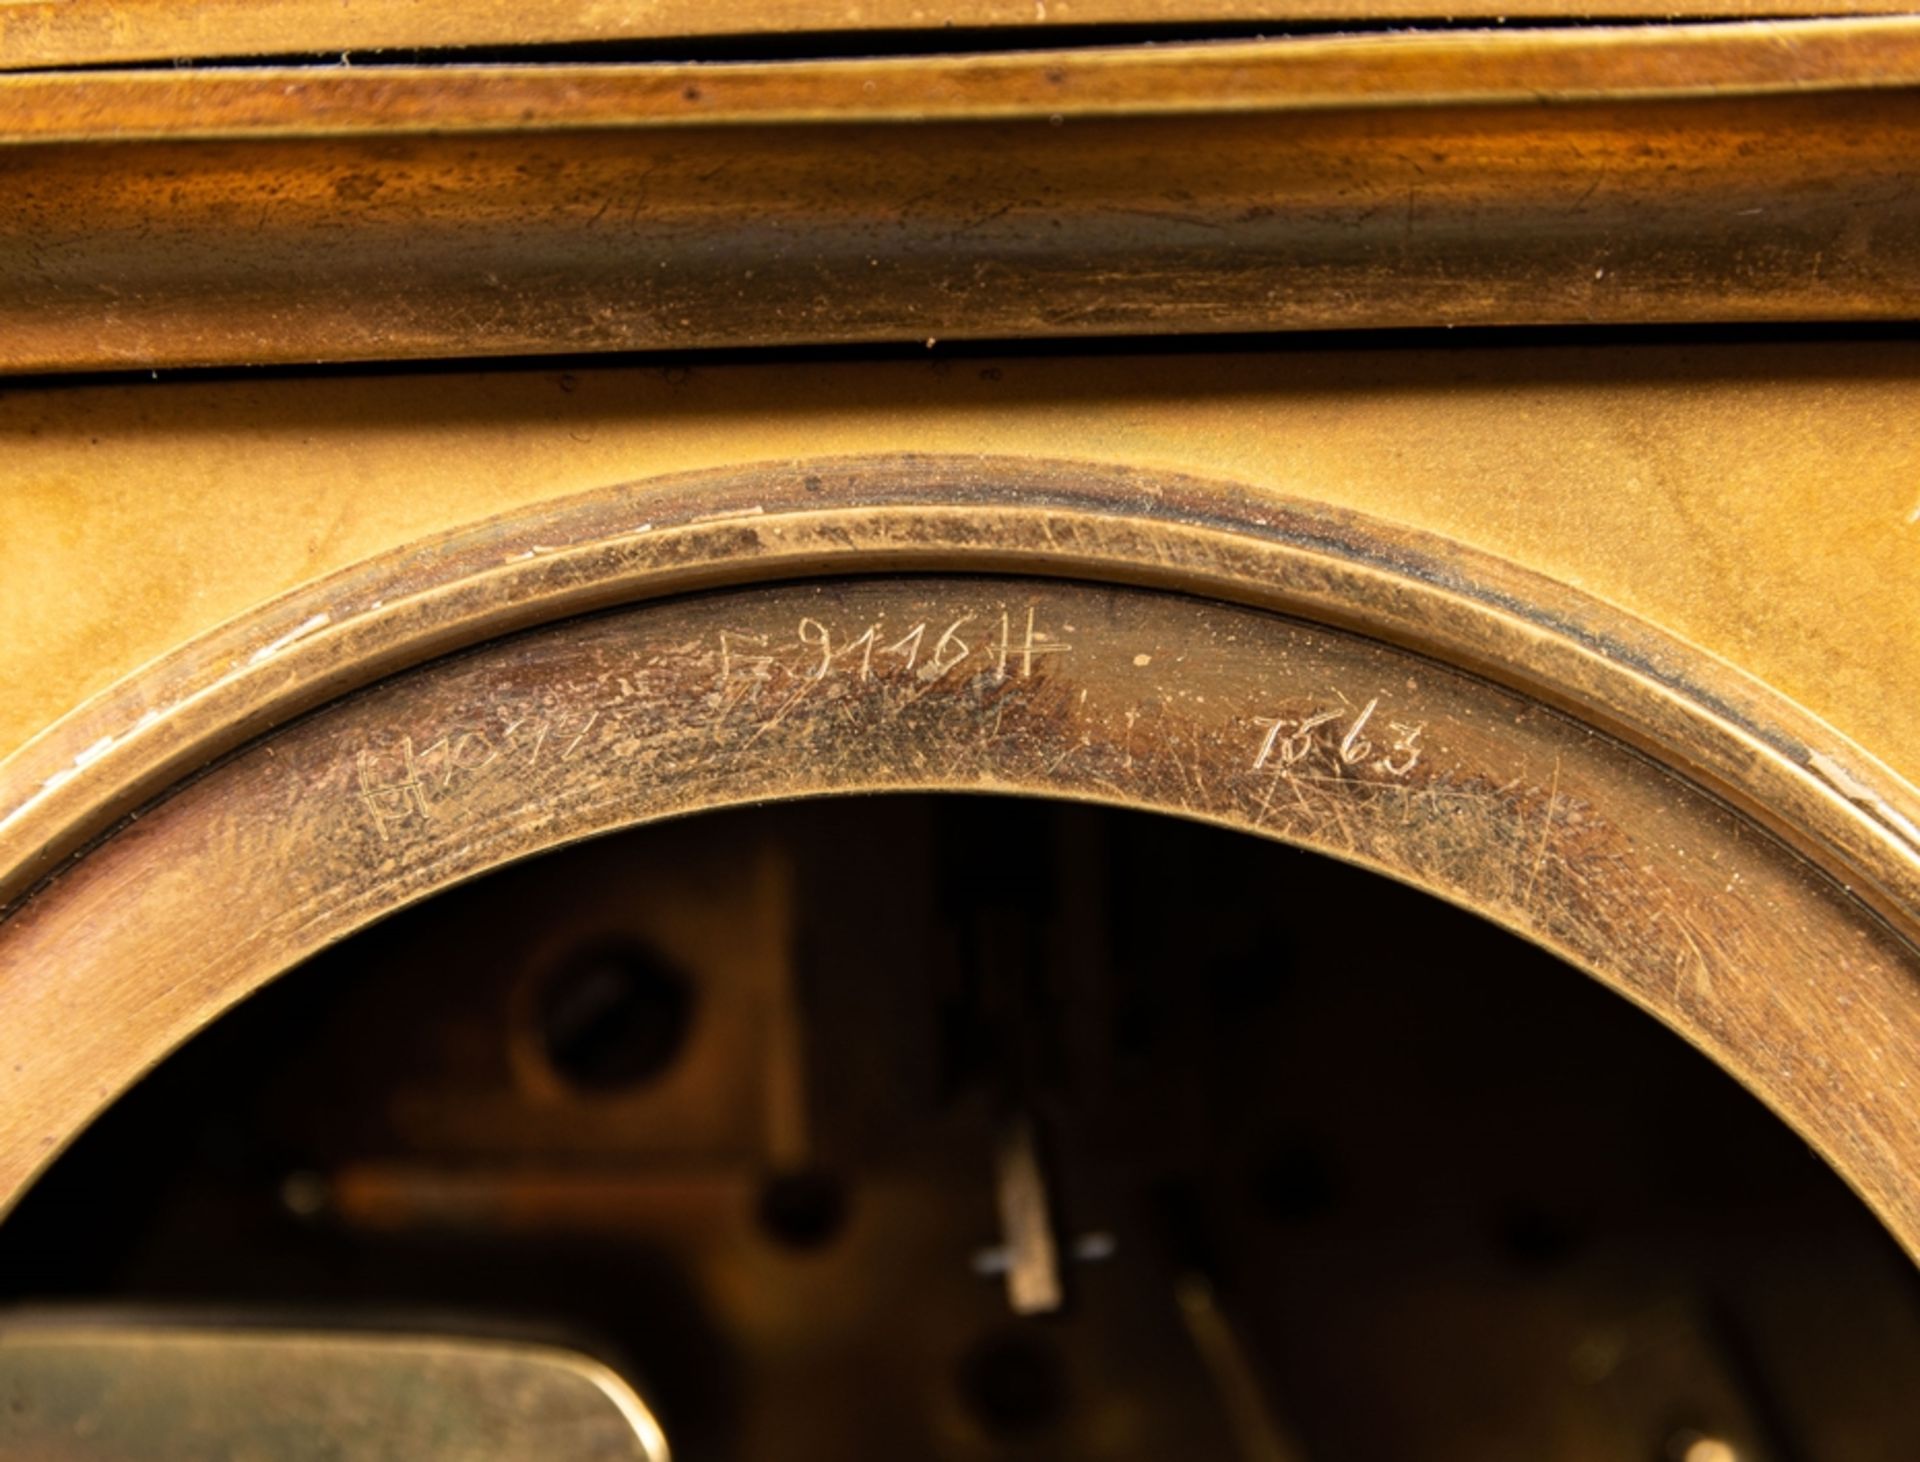 Kaminuhr in Messinggehäuse, Frankreich um 1900; ungeprüftes mechanisches Uhrwer - Image 17 of 20